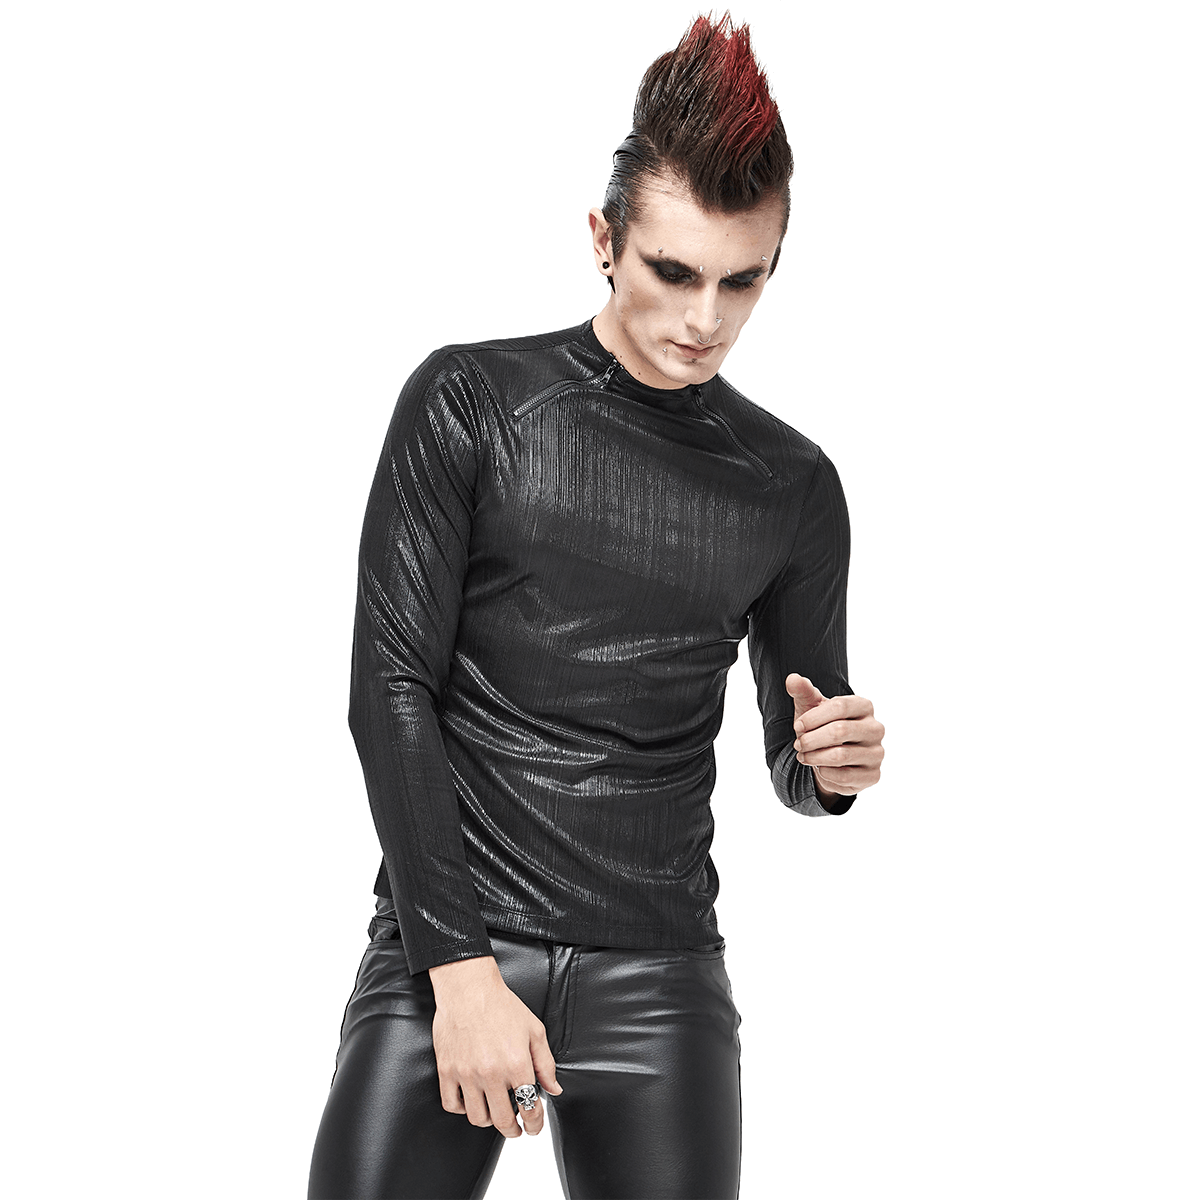 Black Long Sleeves Sweatshirt in Cyberpunk Style / Zipper Neckline Glossy Sweatshirt - HARD'N'HEAVY